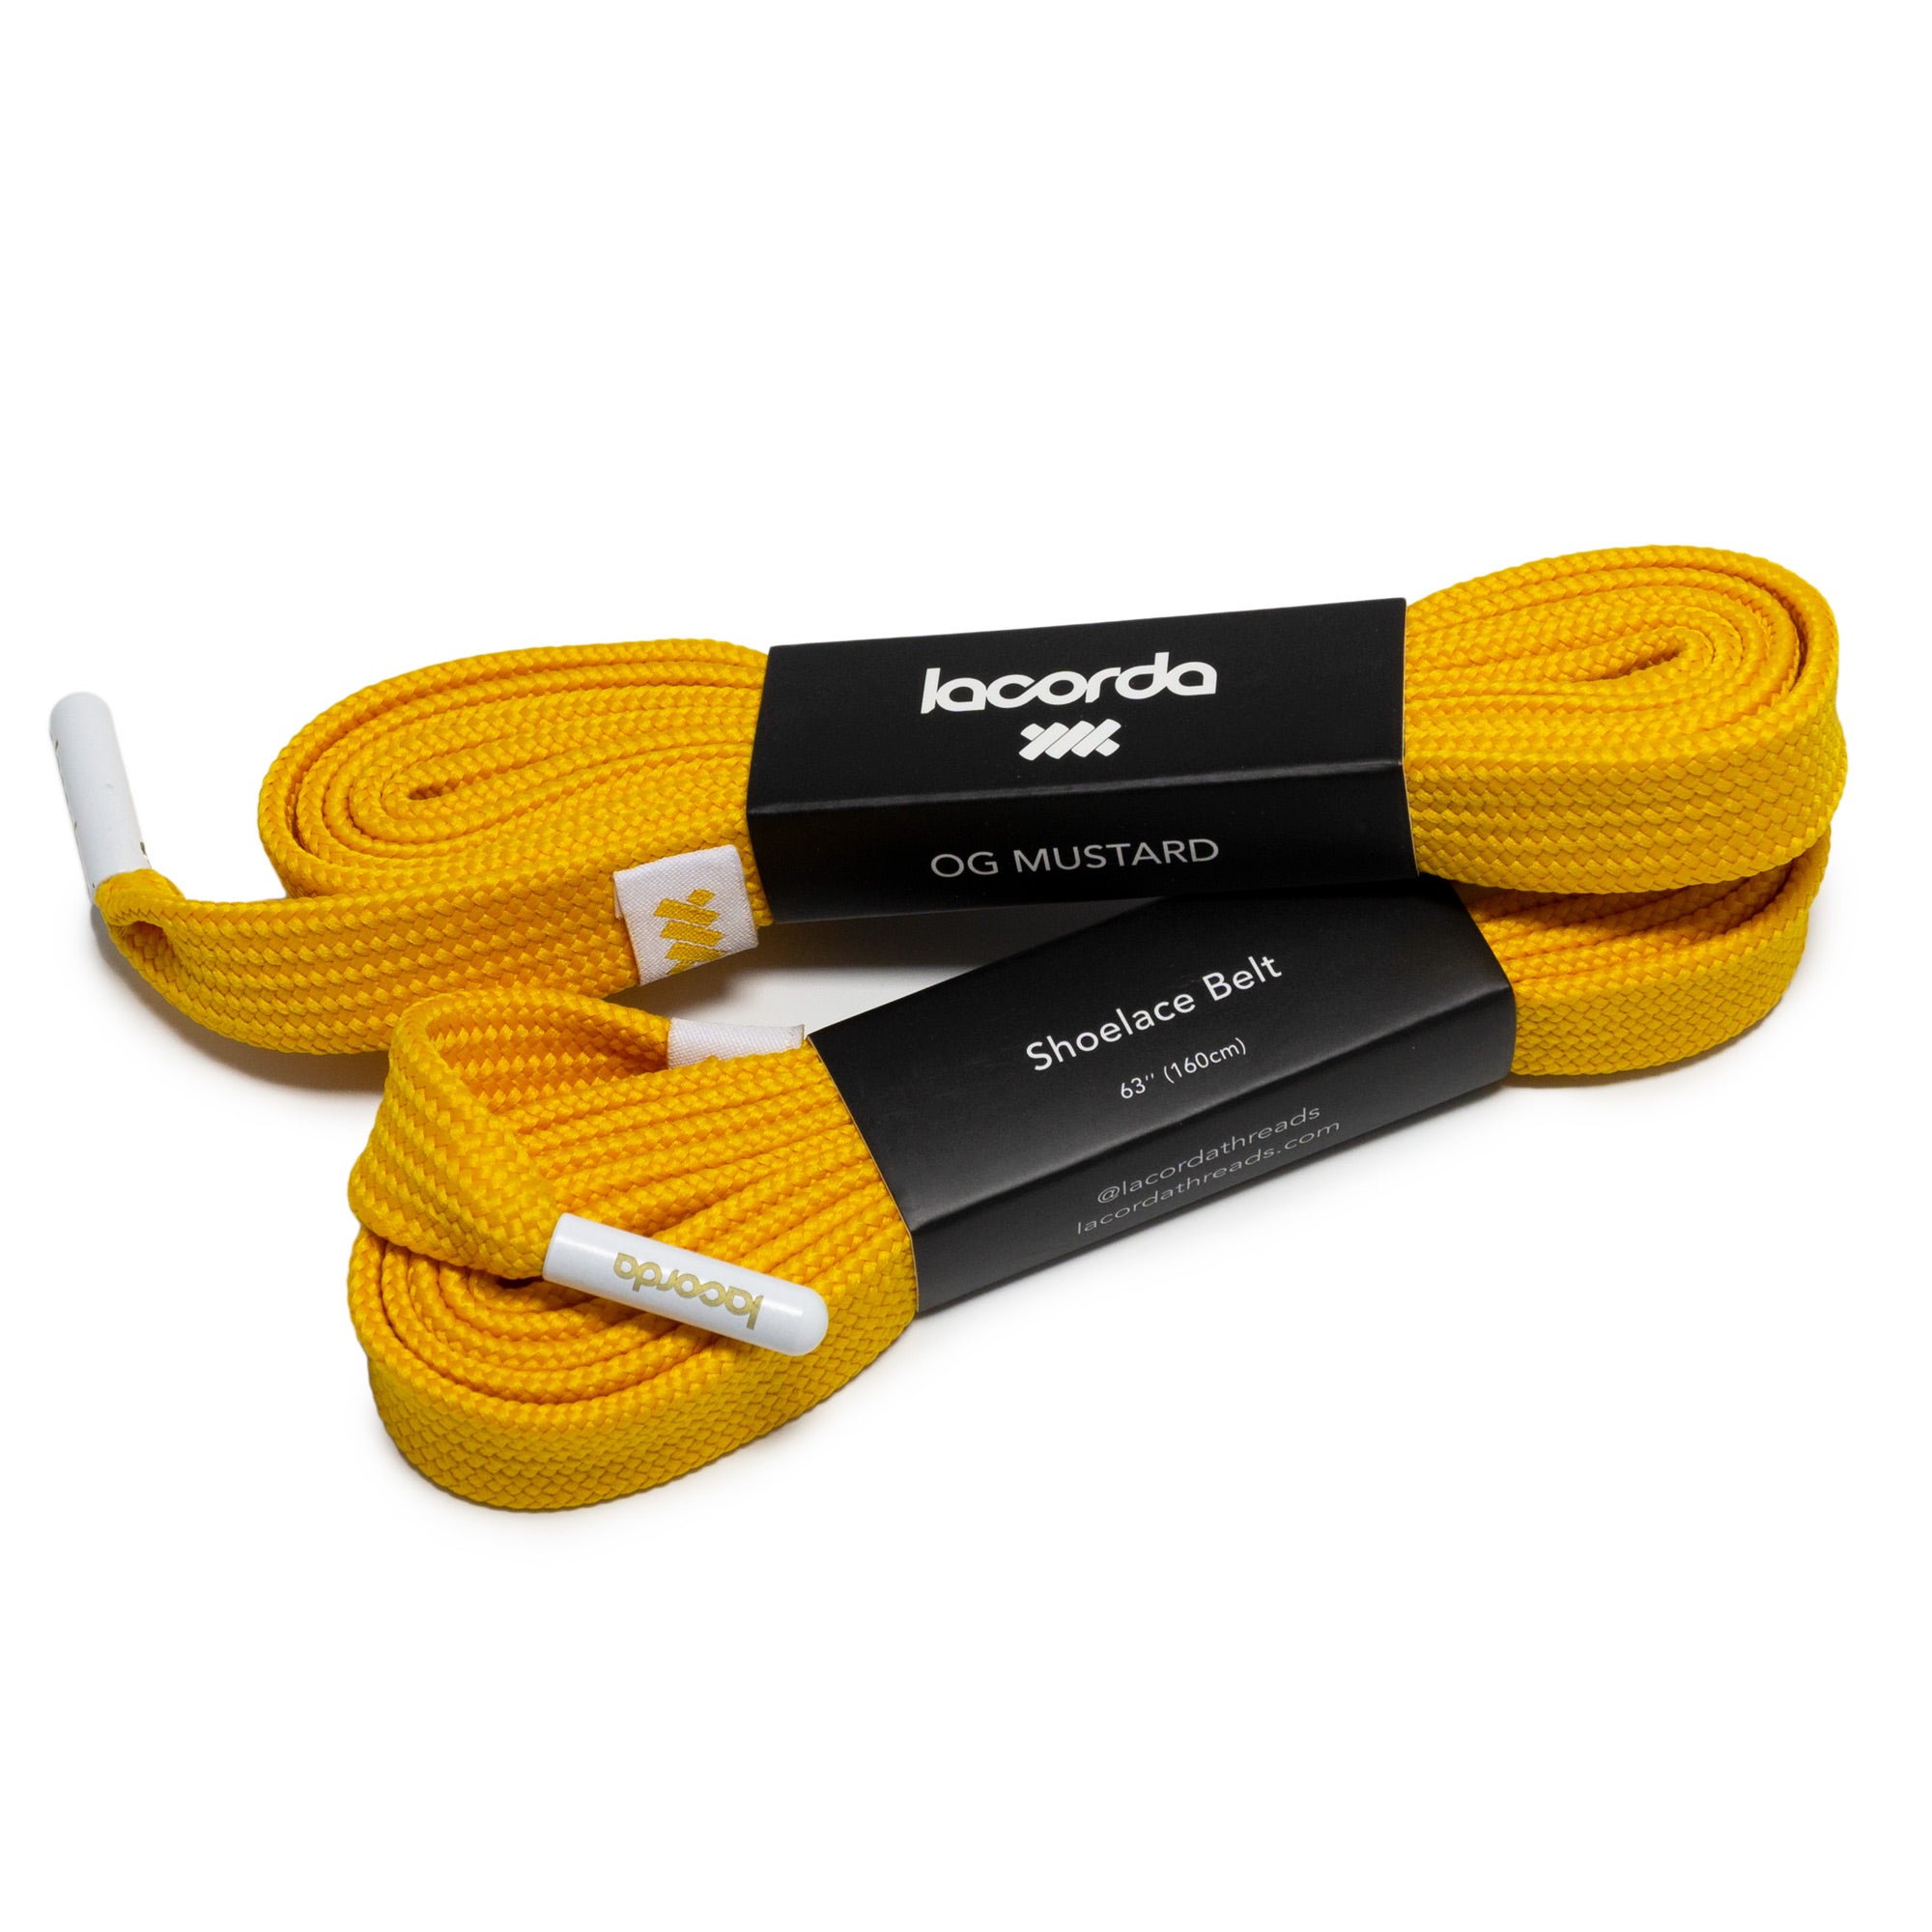 OG Shoelace Belt - Mustard | Lacorda 